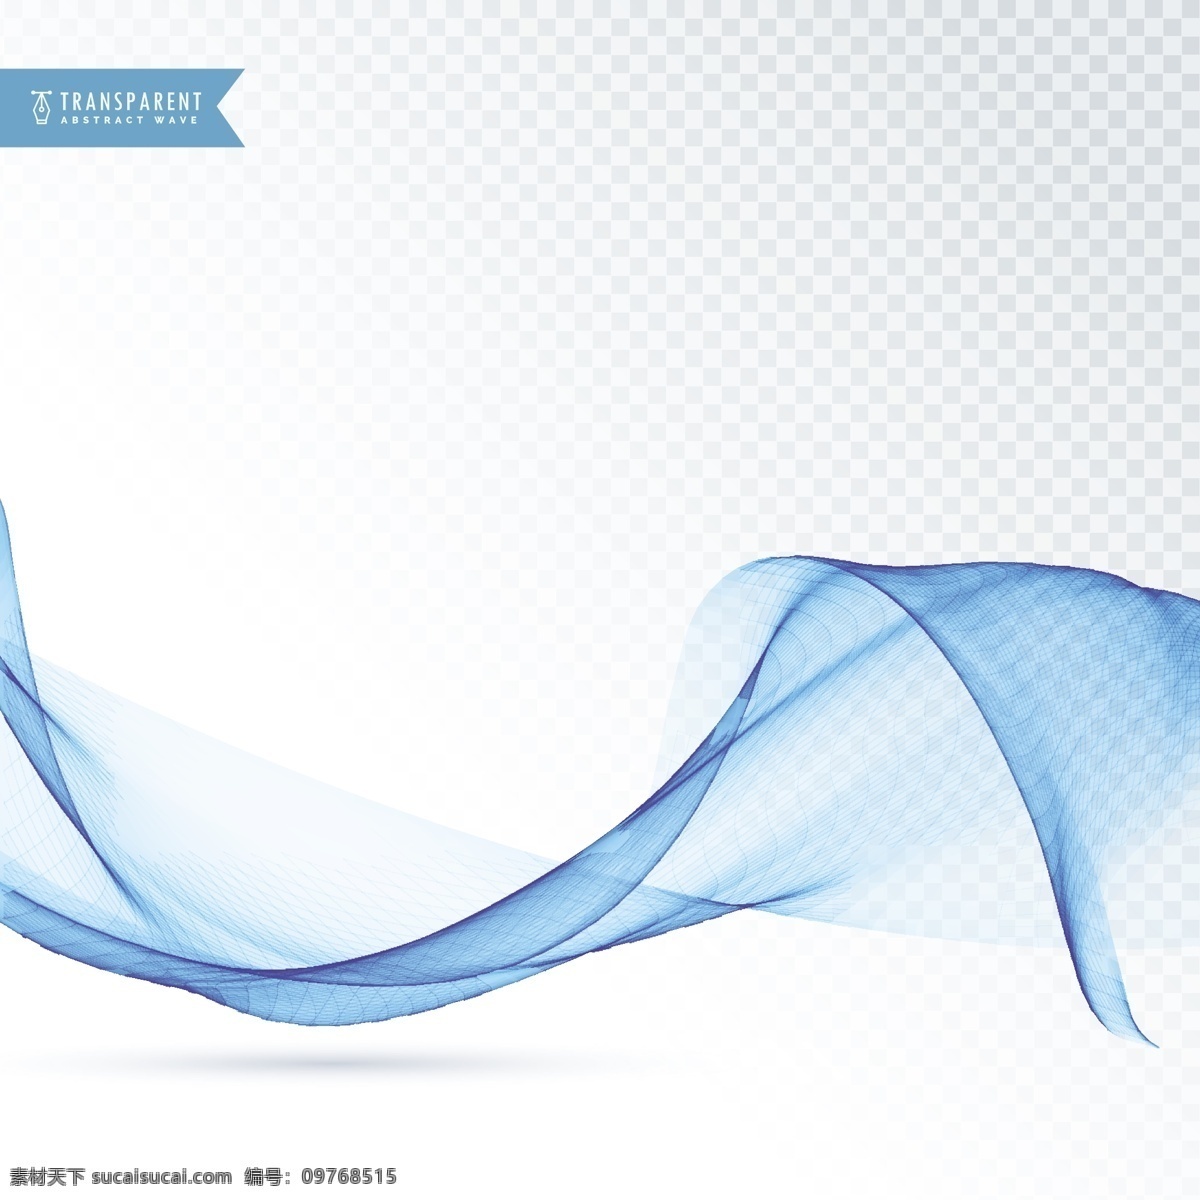 波形动态形状 背景 商业 抽象 线条 波浪 蓝色 形状 烟雾 优雅 能量 漩涡 现代 效果 透明 抽象的形状 运动 柔软 动态